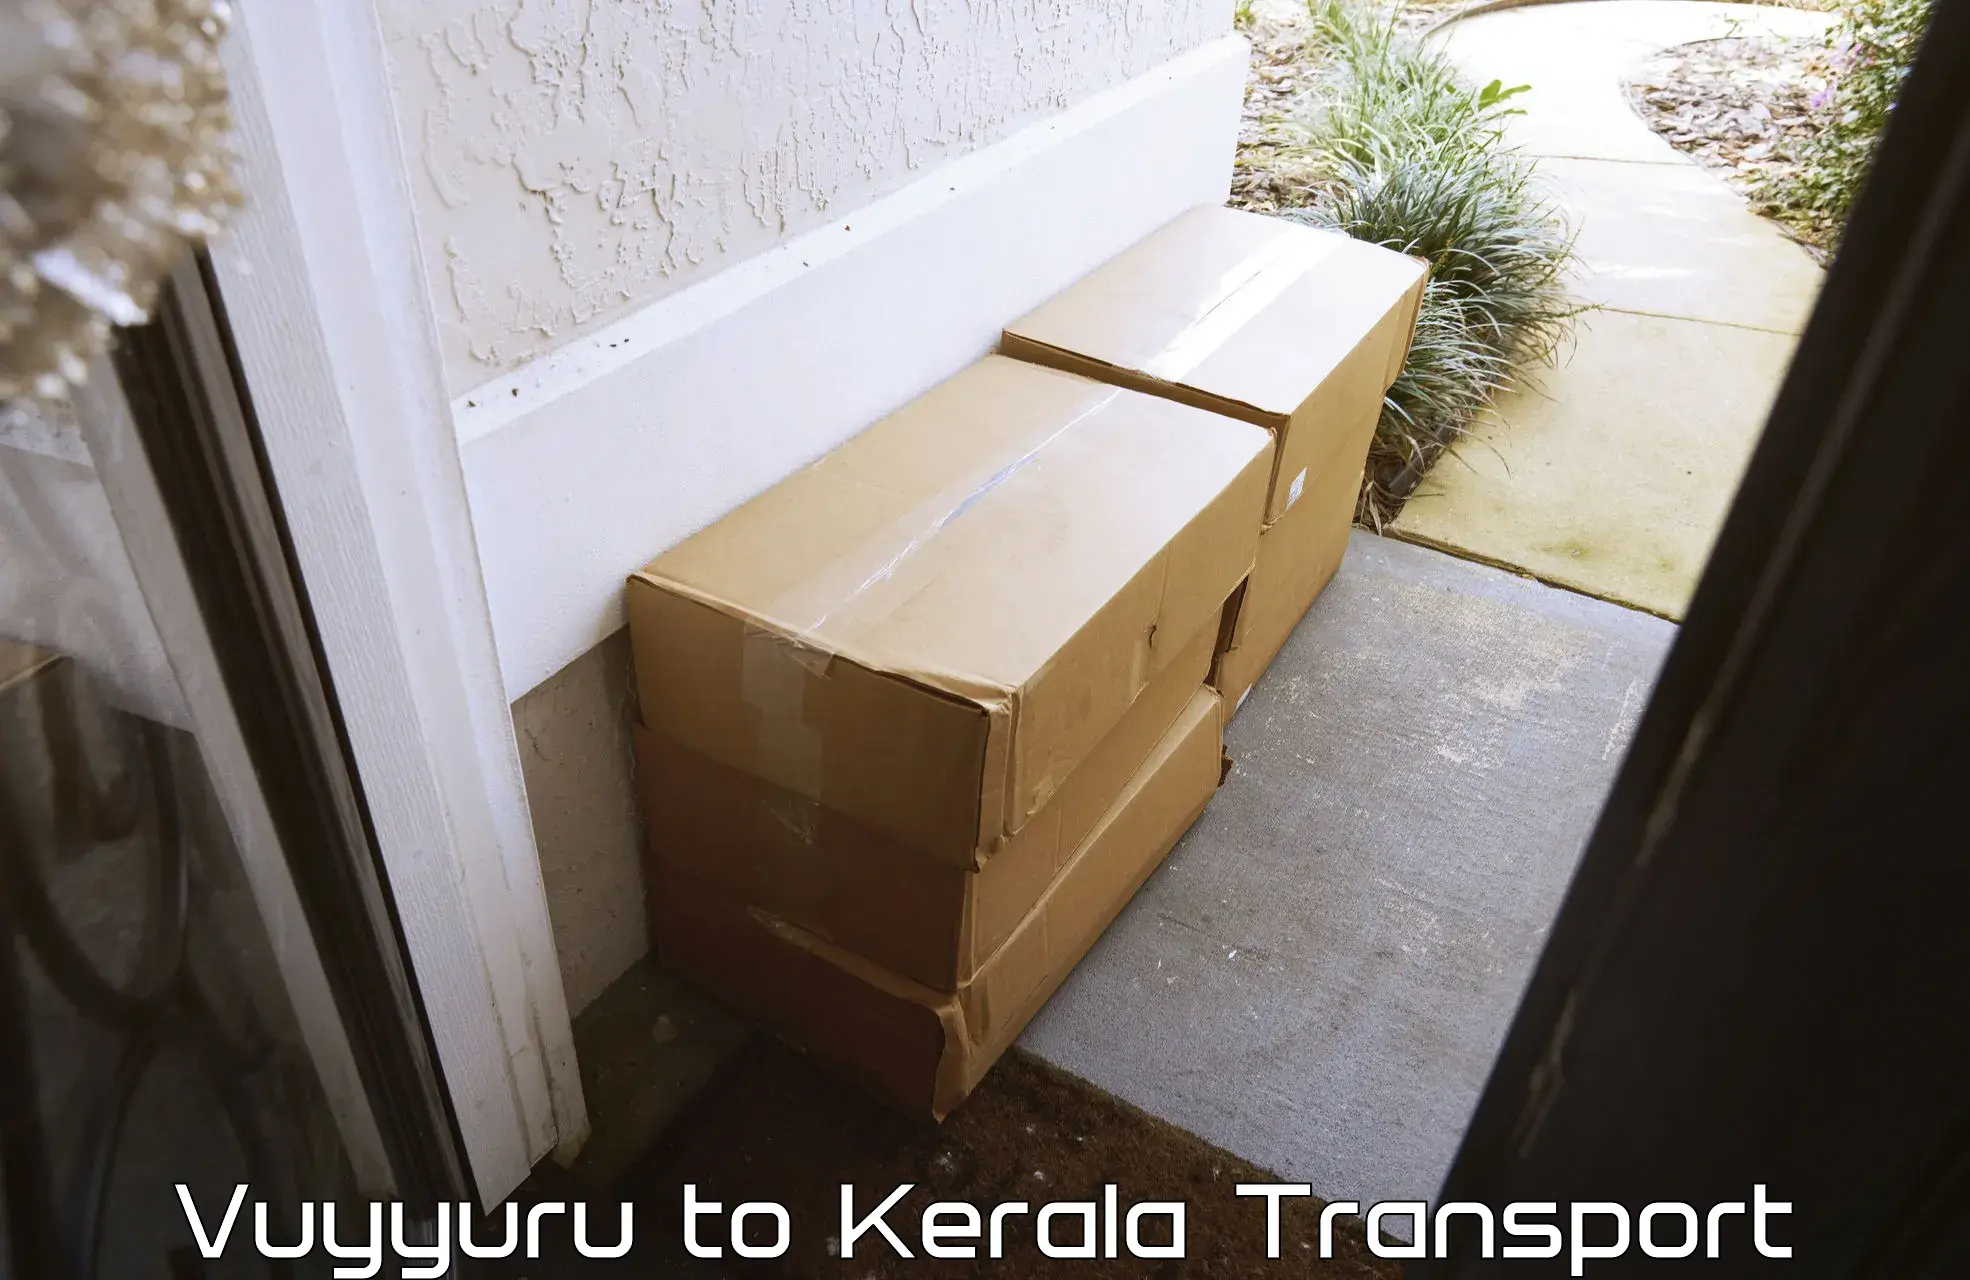 Container transport service in Vuyyuru to Nedumkandam